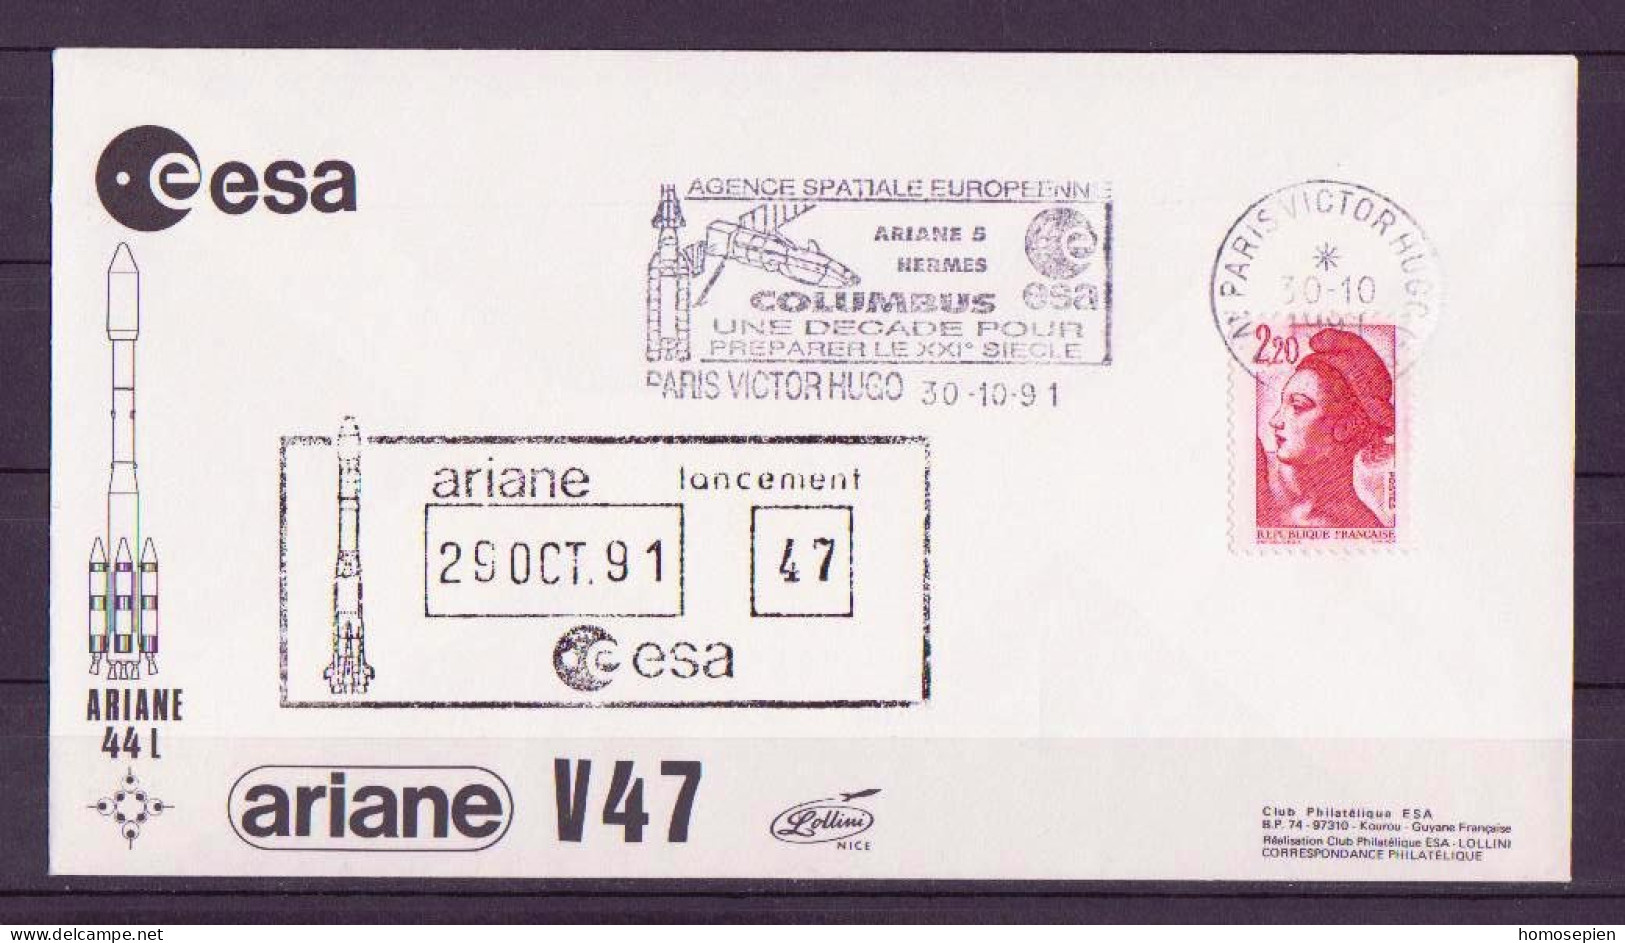 Espace 1991 10 30 - ESA - Ariane V47 - Officielle - Paris - Europa